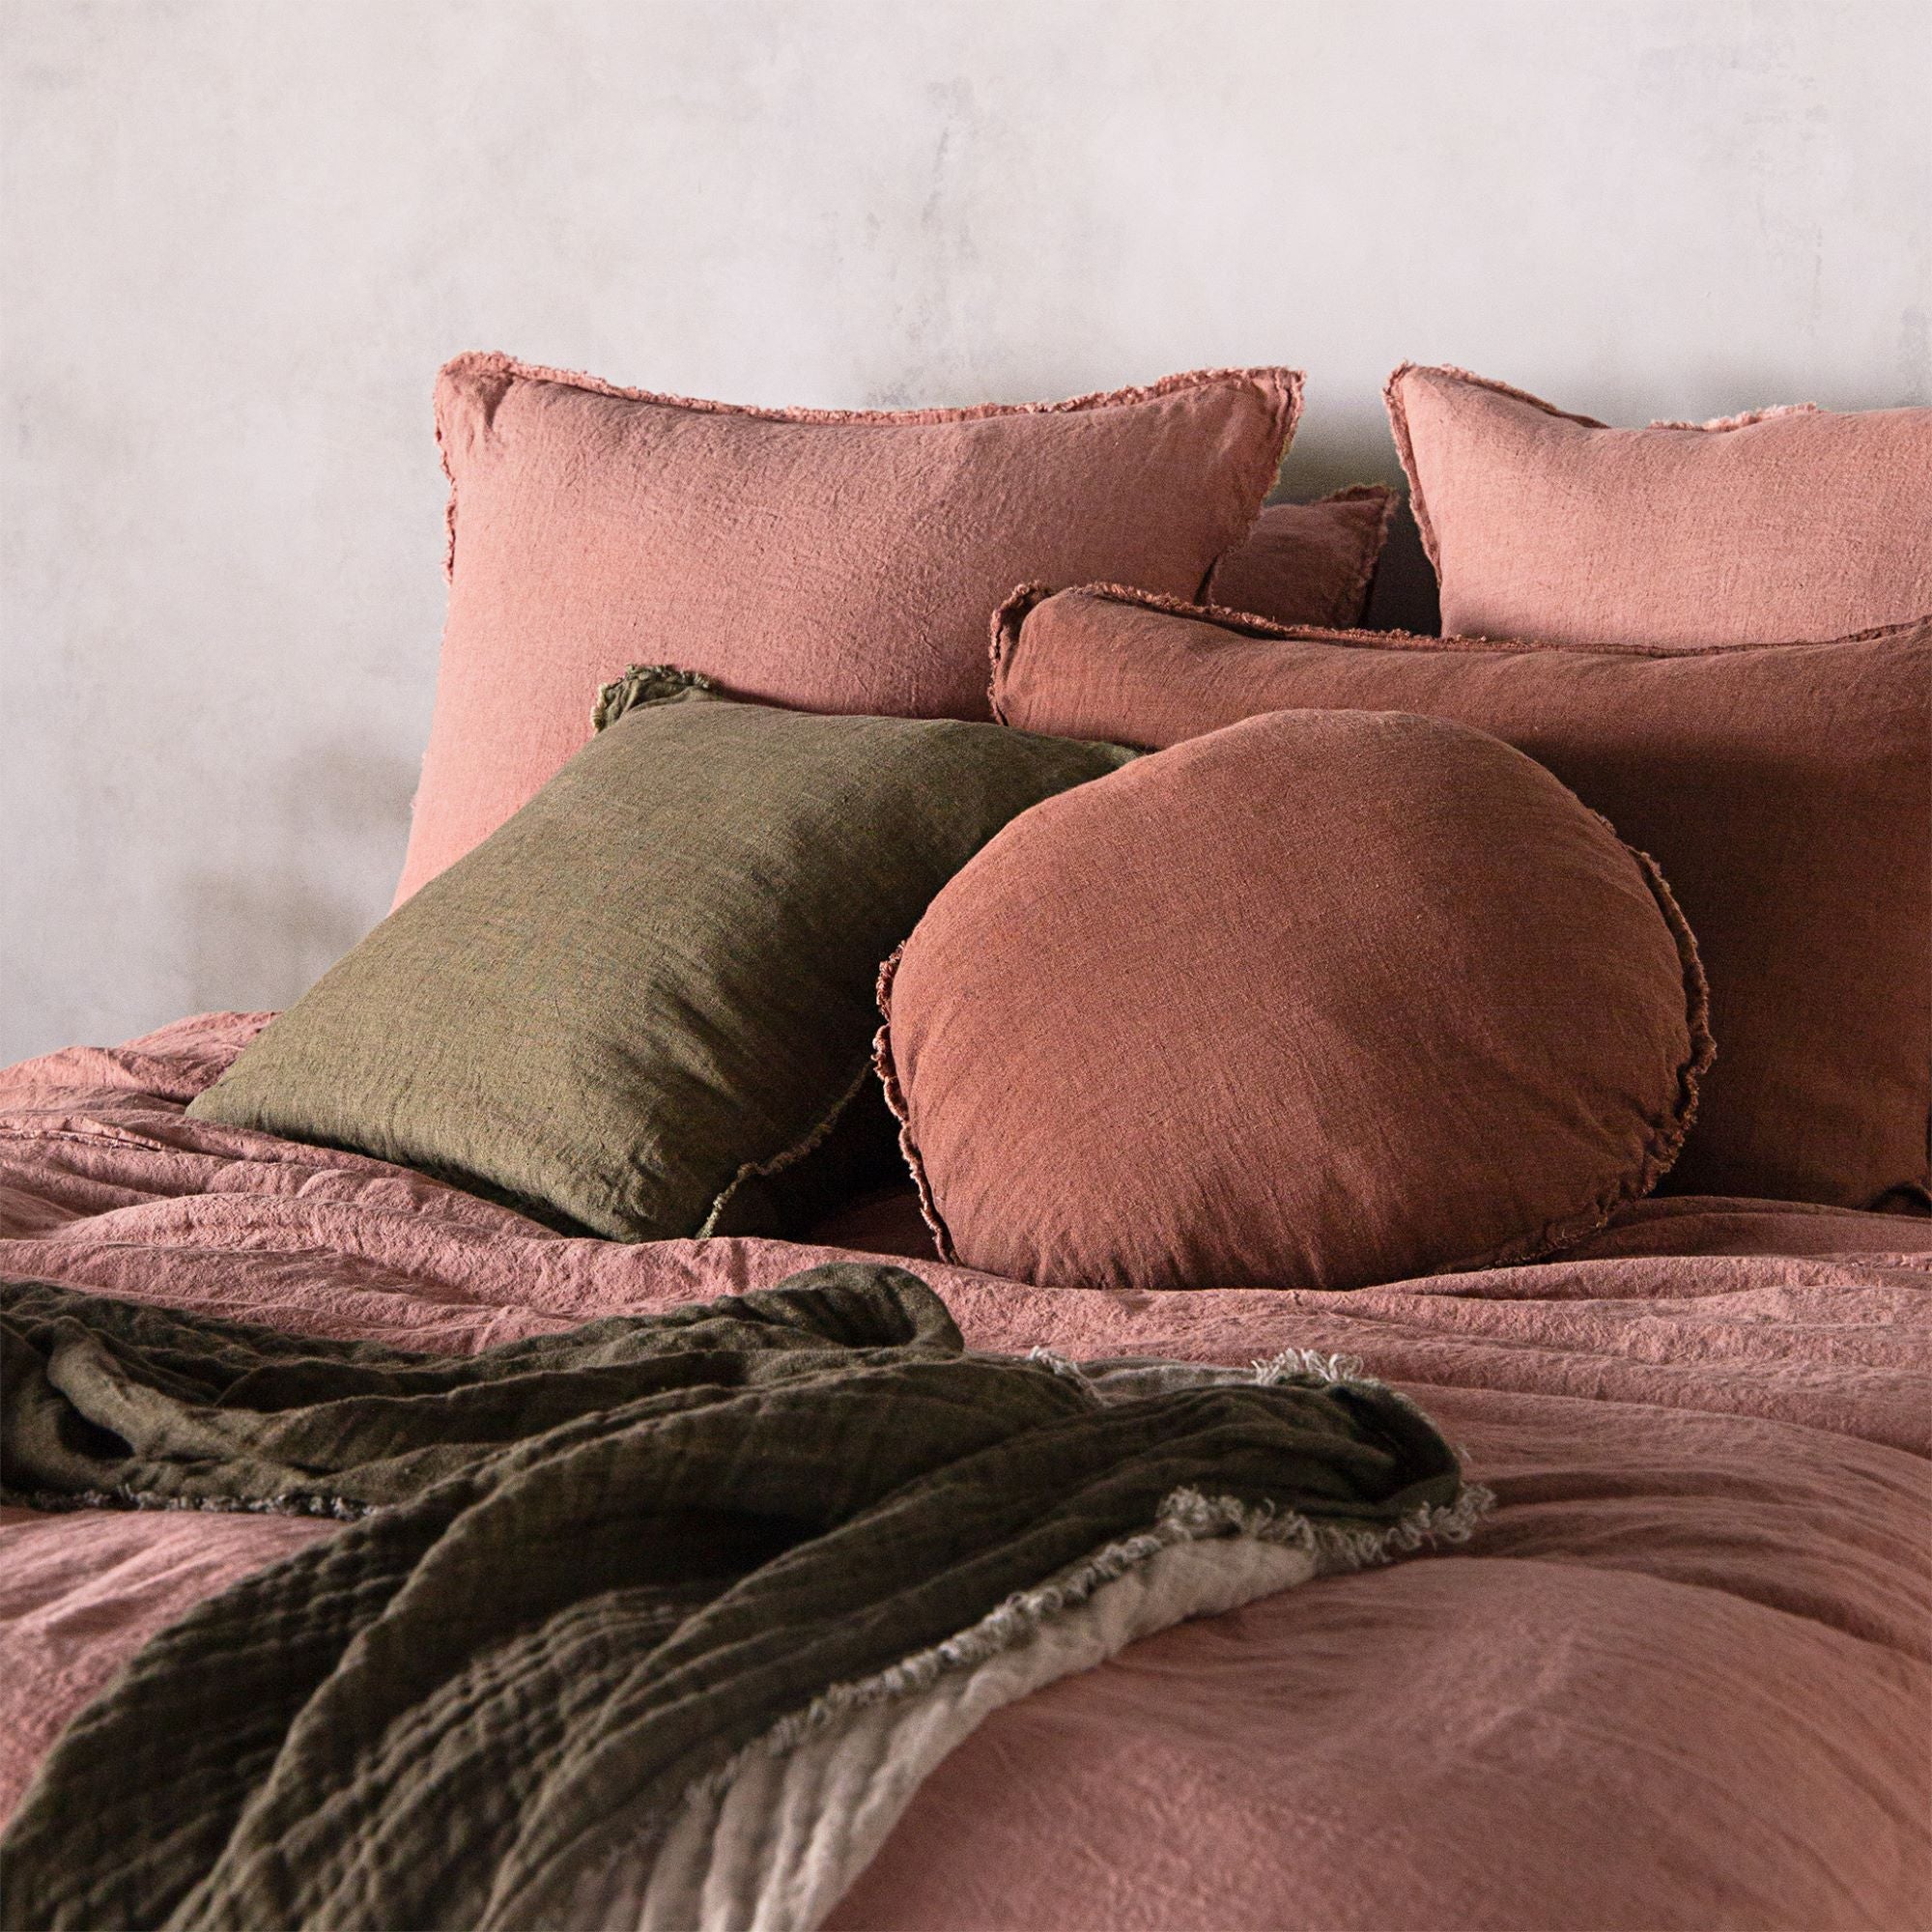 European Linen Pillowcases | Clay Pink | Hale Mercantile Co.